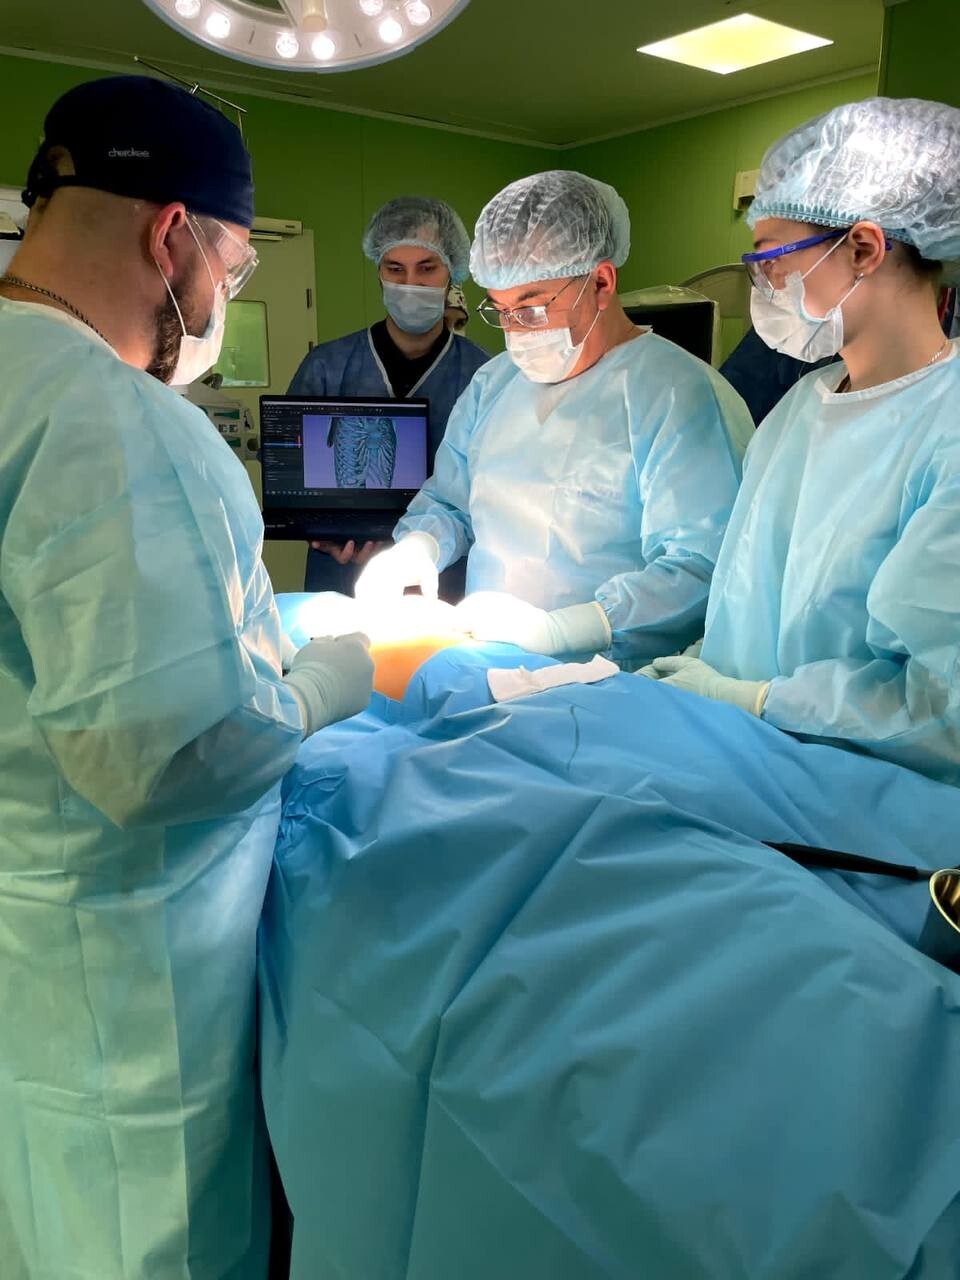 3D-моделирование помогло хирургам выполнить редчайшую операцию на грудную клетку⁠⁠